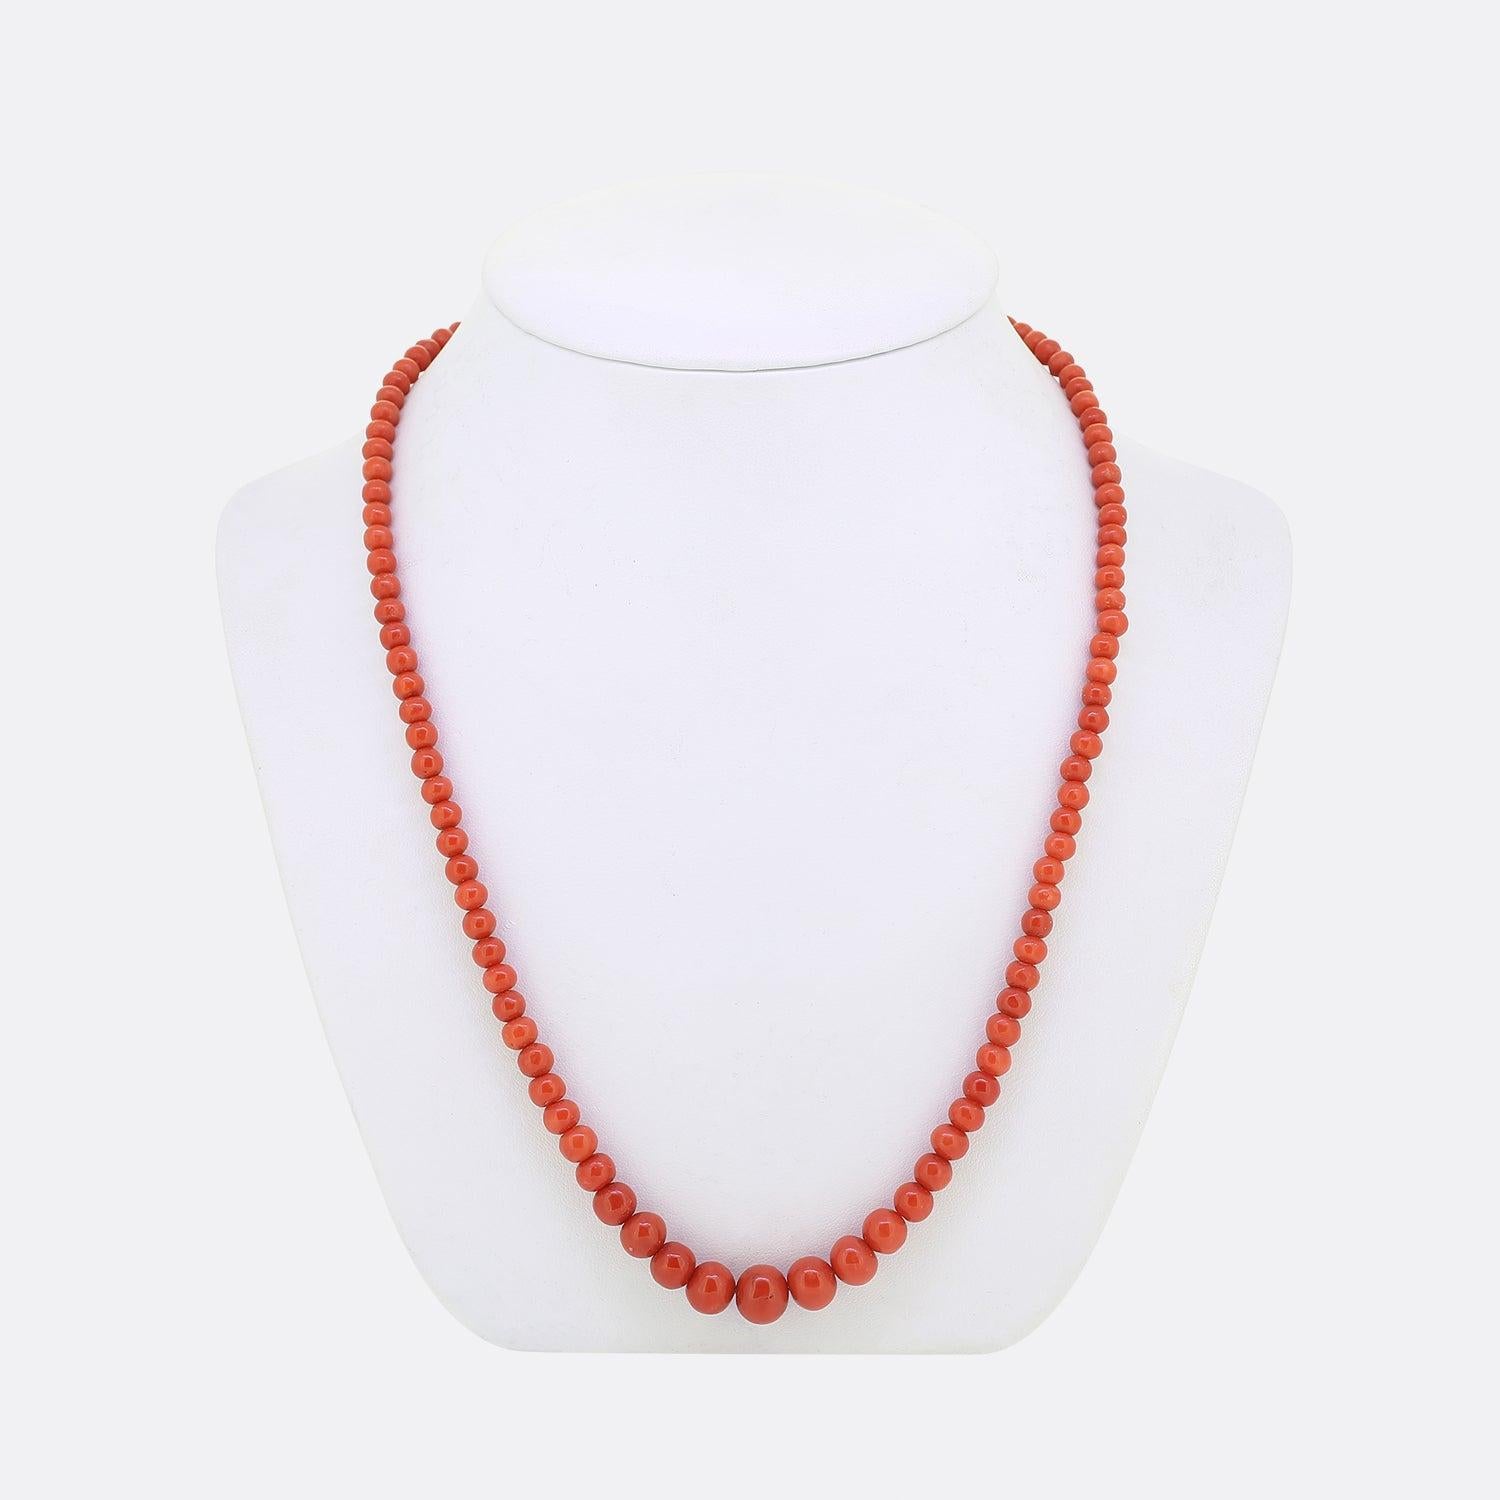 Dies ist ein Vintage-Koralle einzigen Strang Halskette. Die Halskette besteht aus abgestuften Korallenperlen mit einem Ringverschluss aus 9 Karat Gelbgold. 

Zustand: Gebraucht (Sehr gut)
Gewicht: 22.5 Gramm
Abmessungen der Koralle: Kleinste 4 mm,